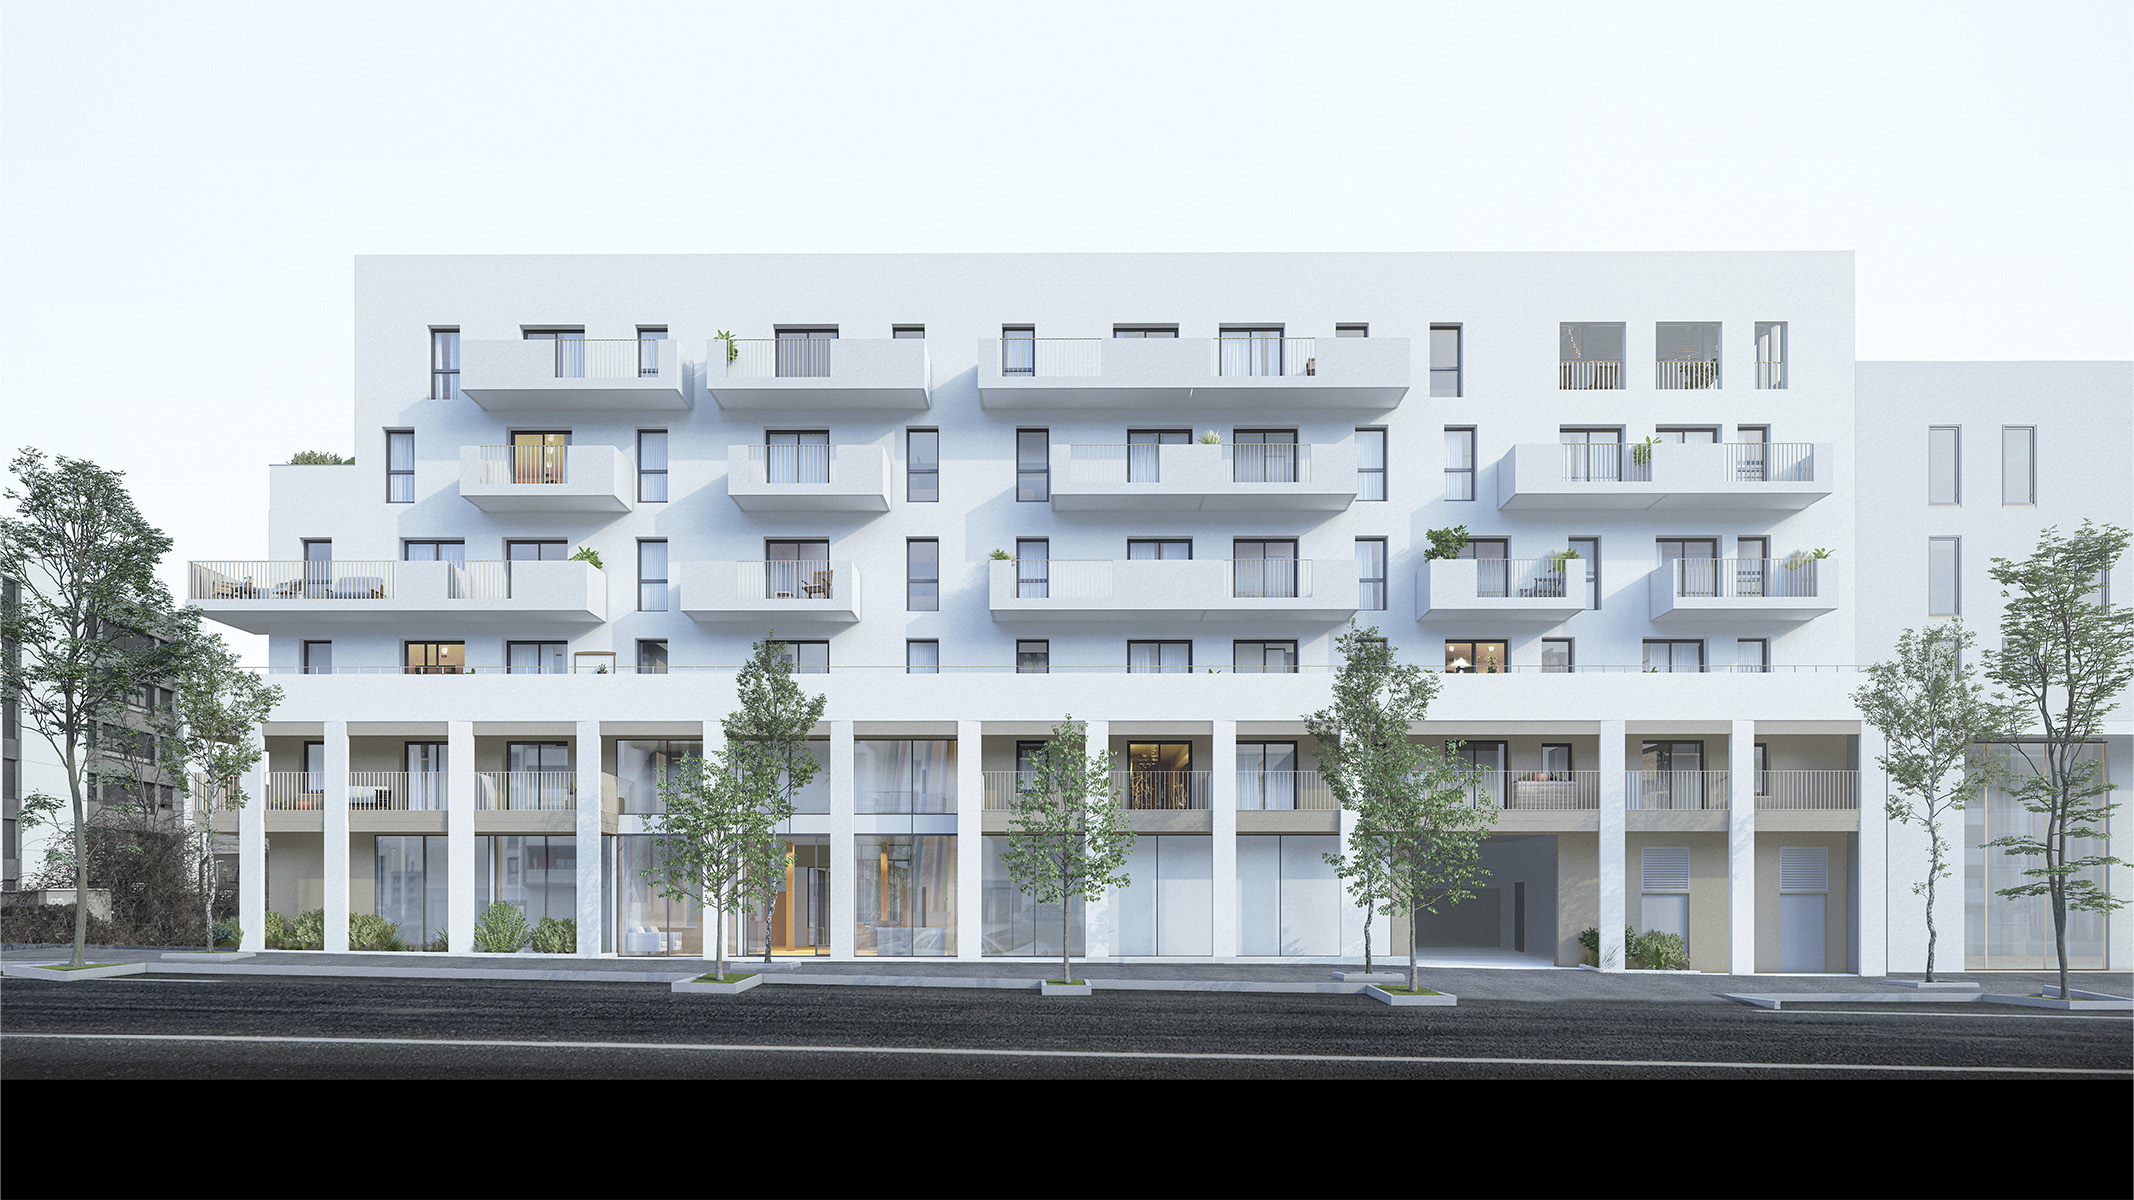 Perspective 3D vue depuis la rue face à la façade, bâtiment sur 5 etages avec balcons et deux premiers étages sous une voute de colonnade qui abrite une teinte beige en soubassement